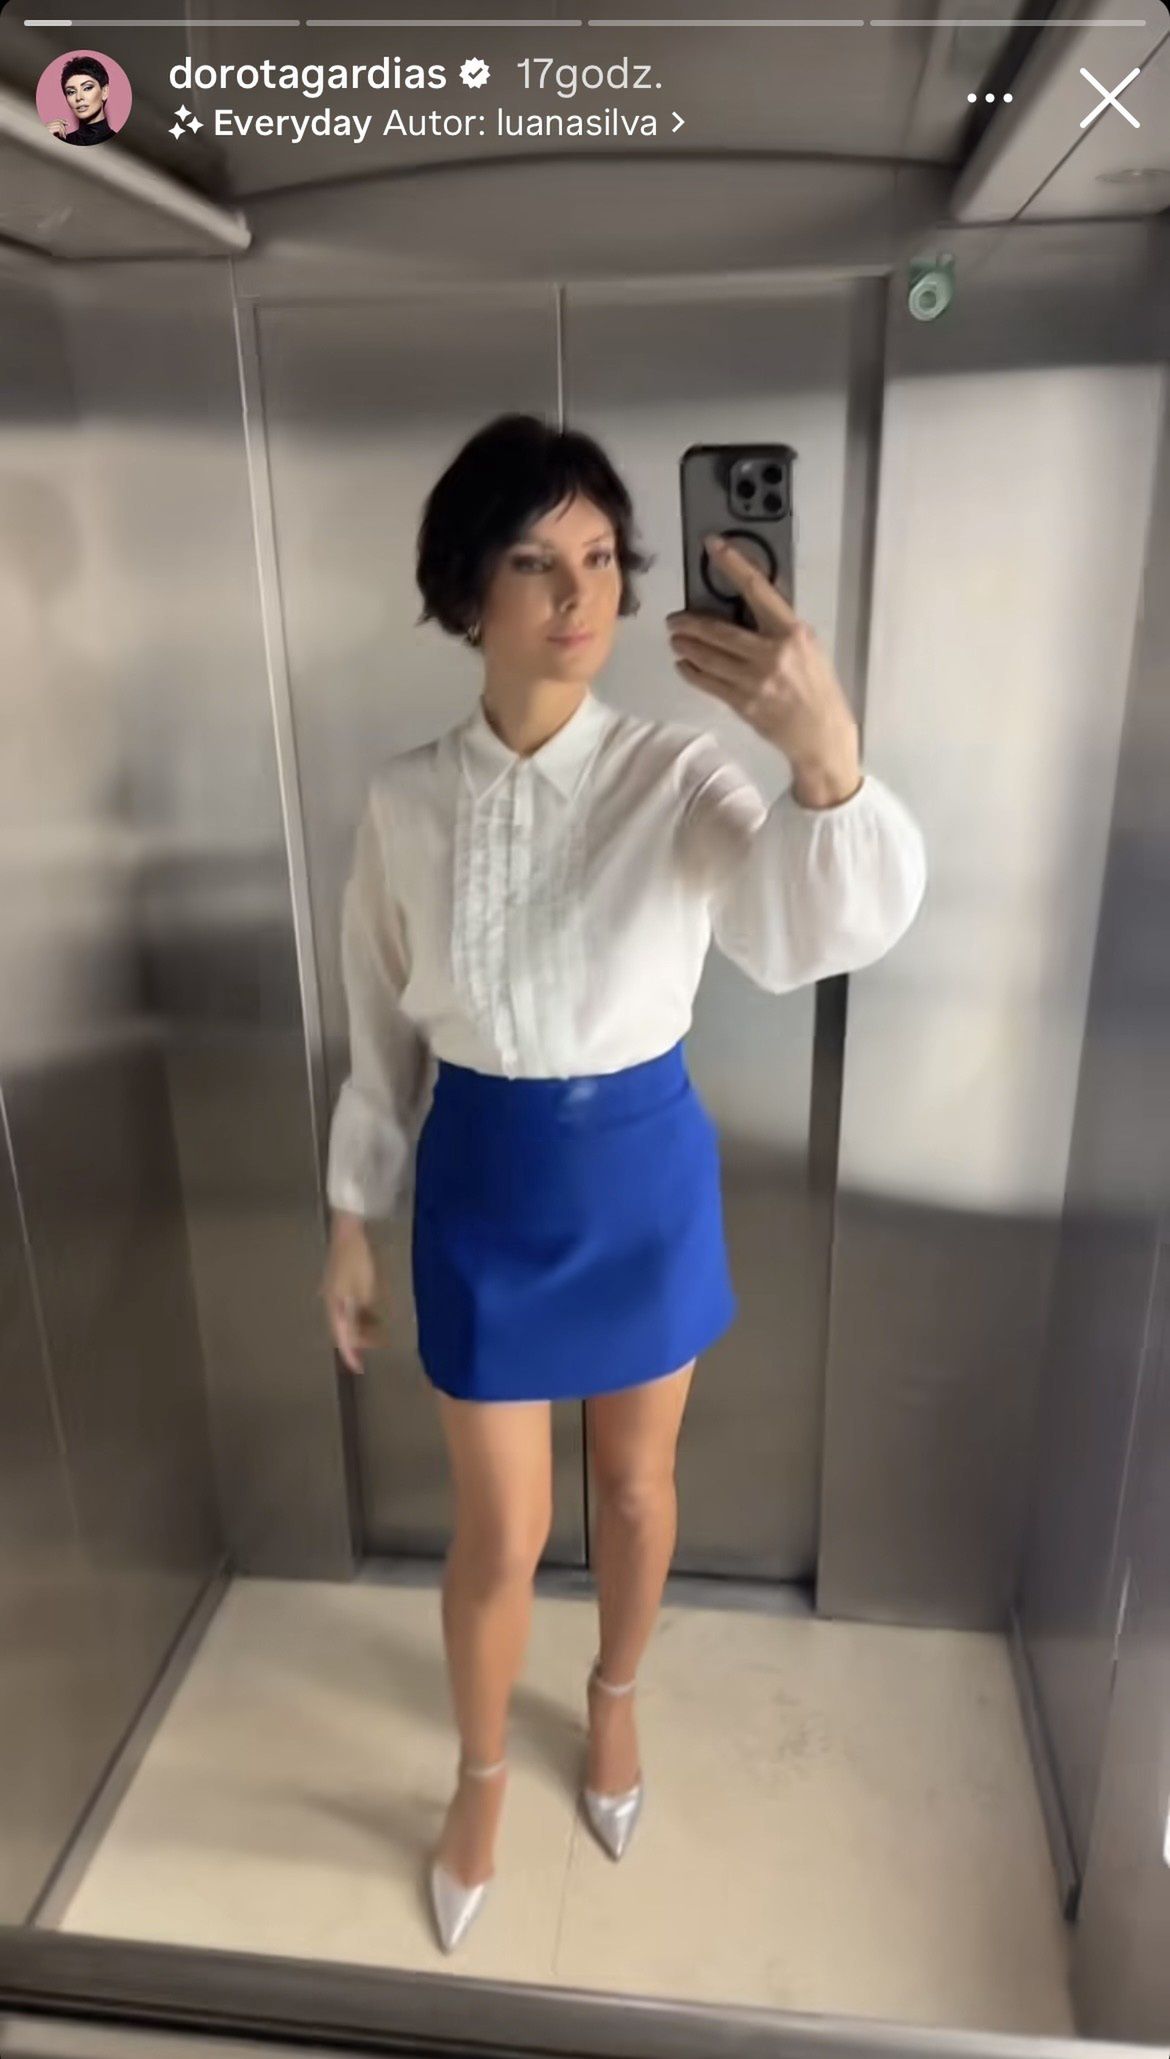 Dorota Gardias zadaje szyku na Instagramie